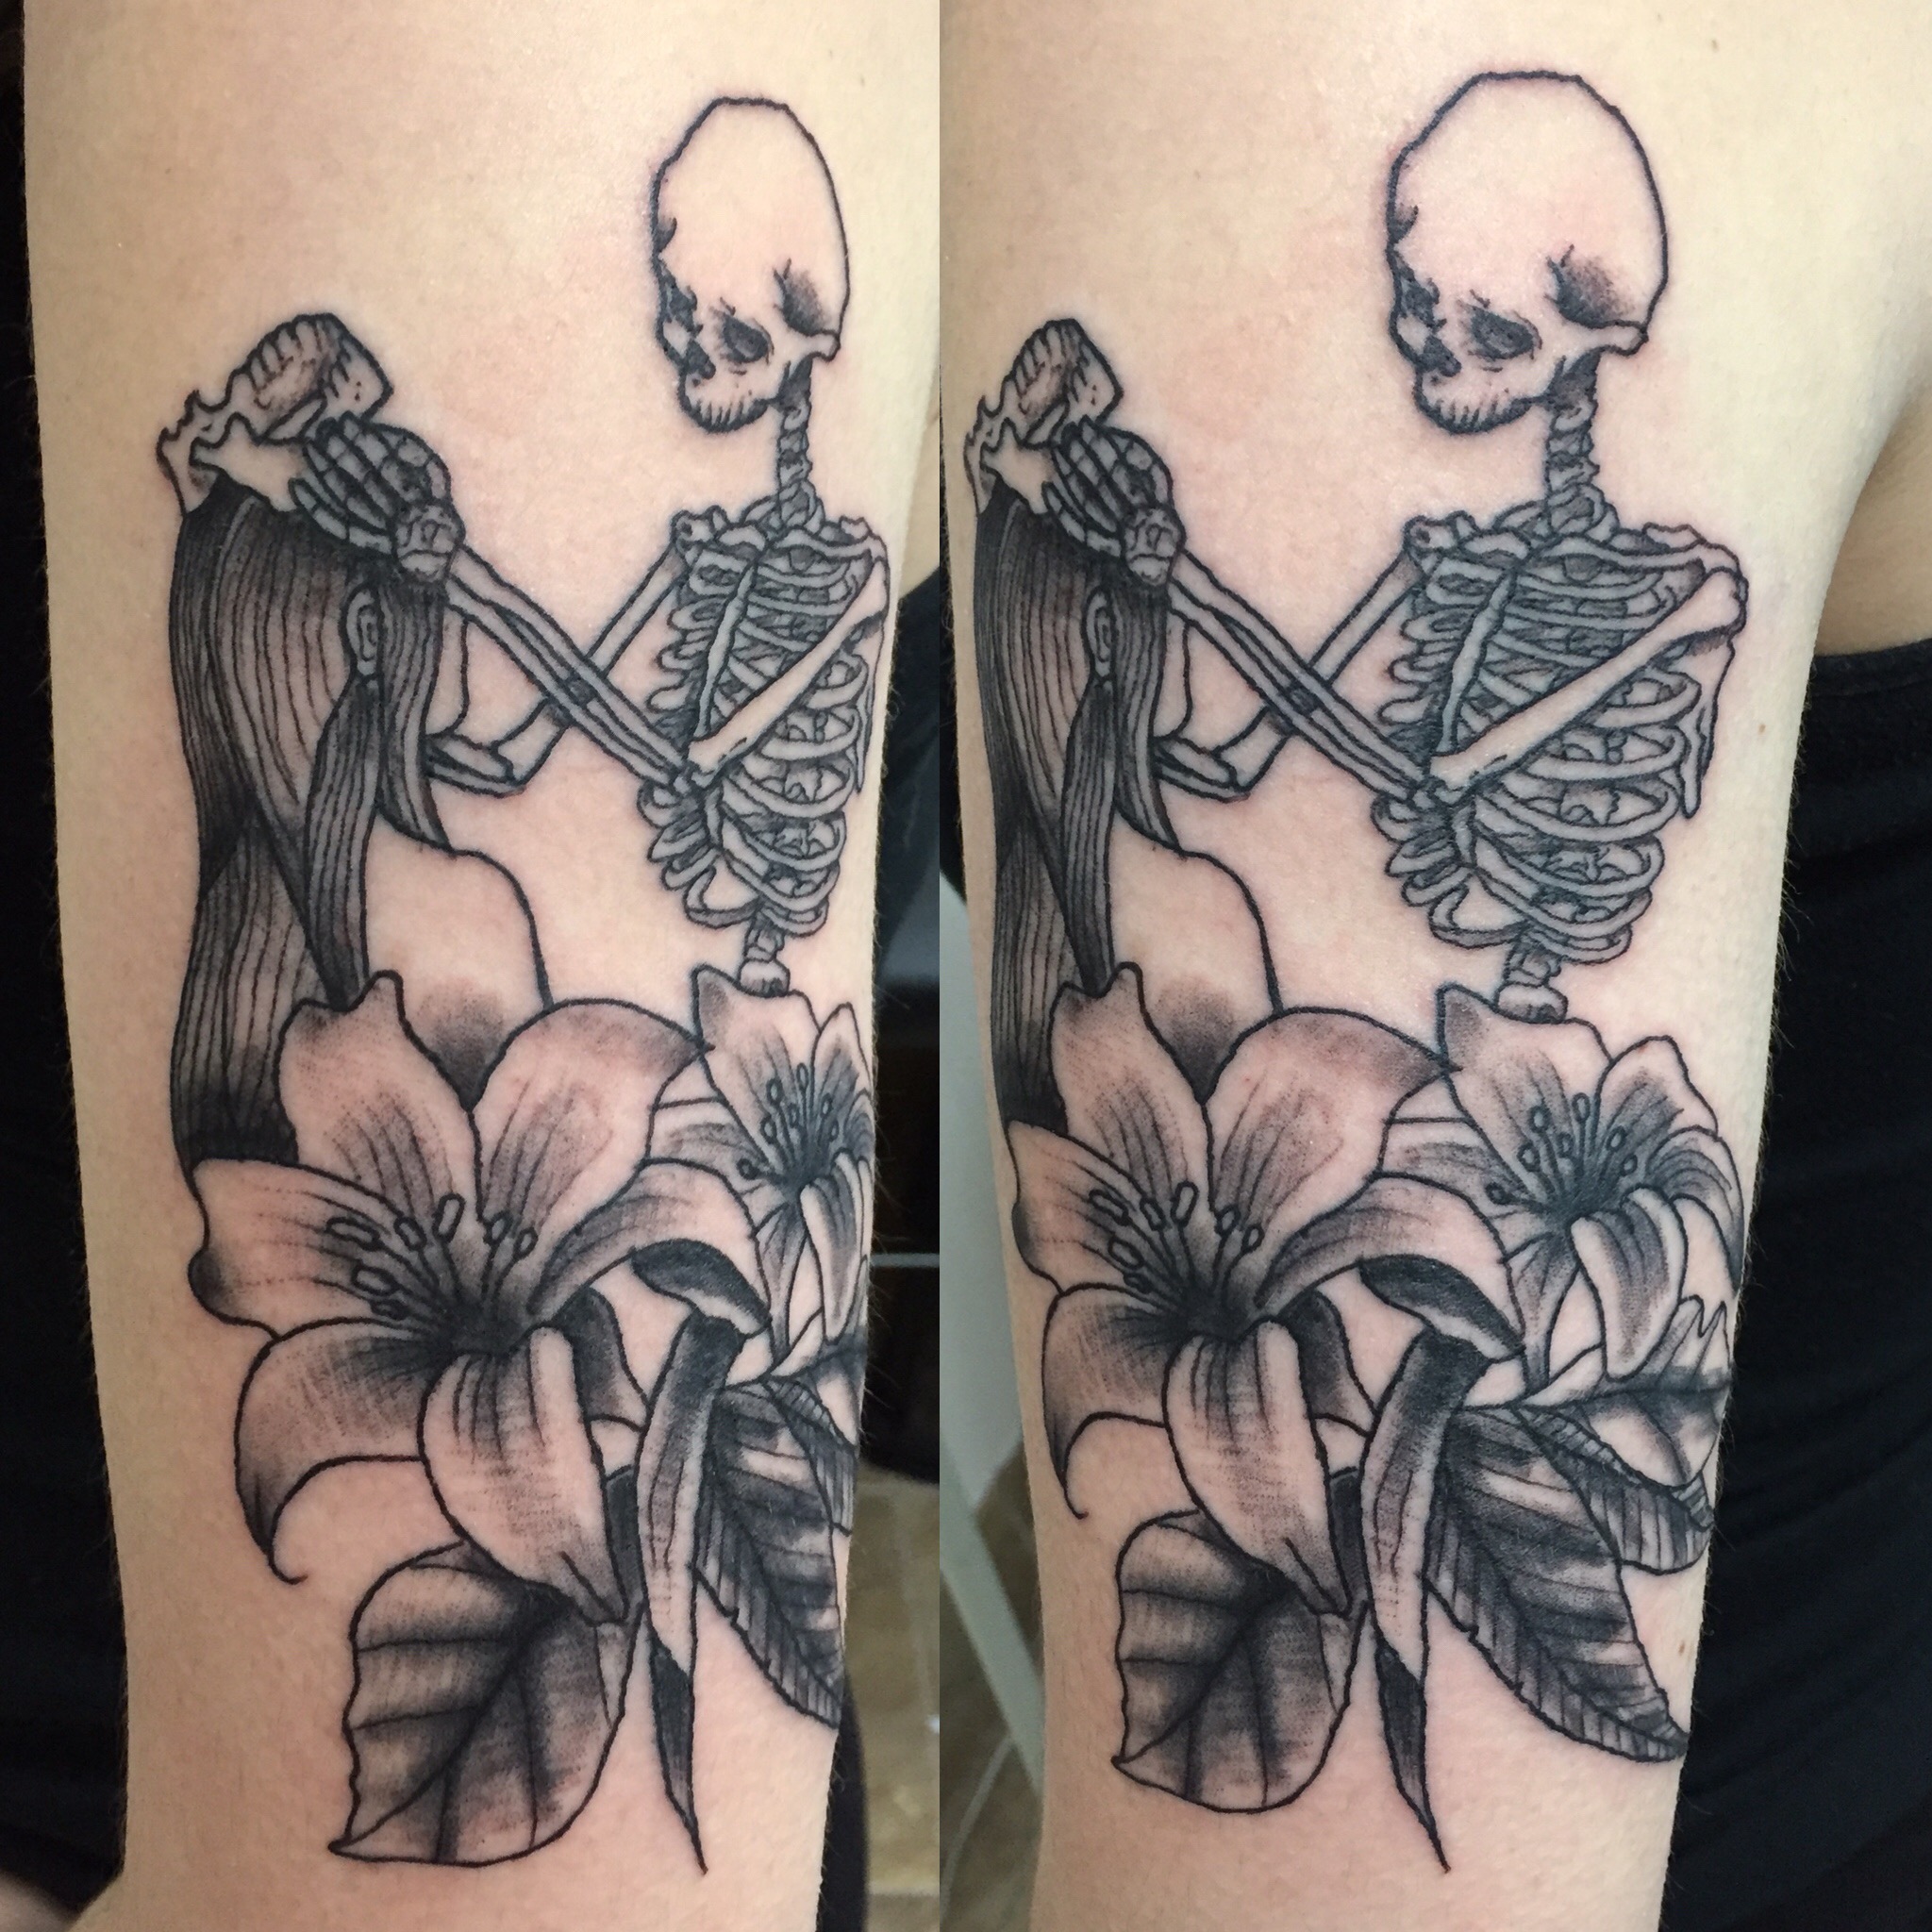 Teemu skeleton and girl